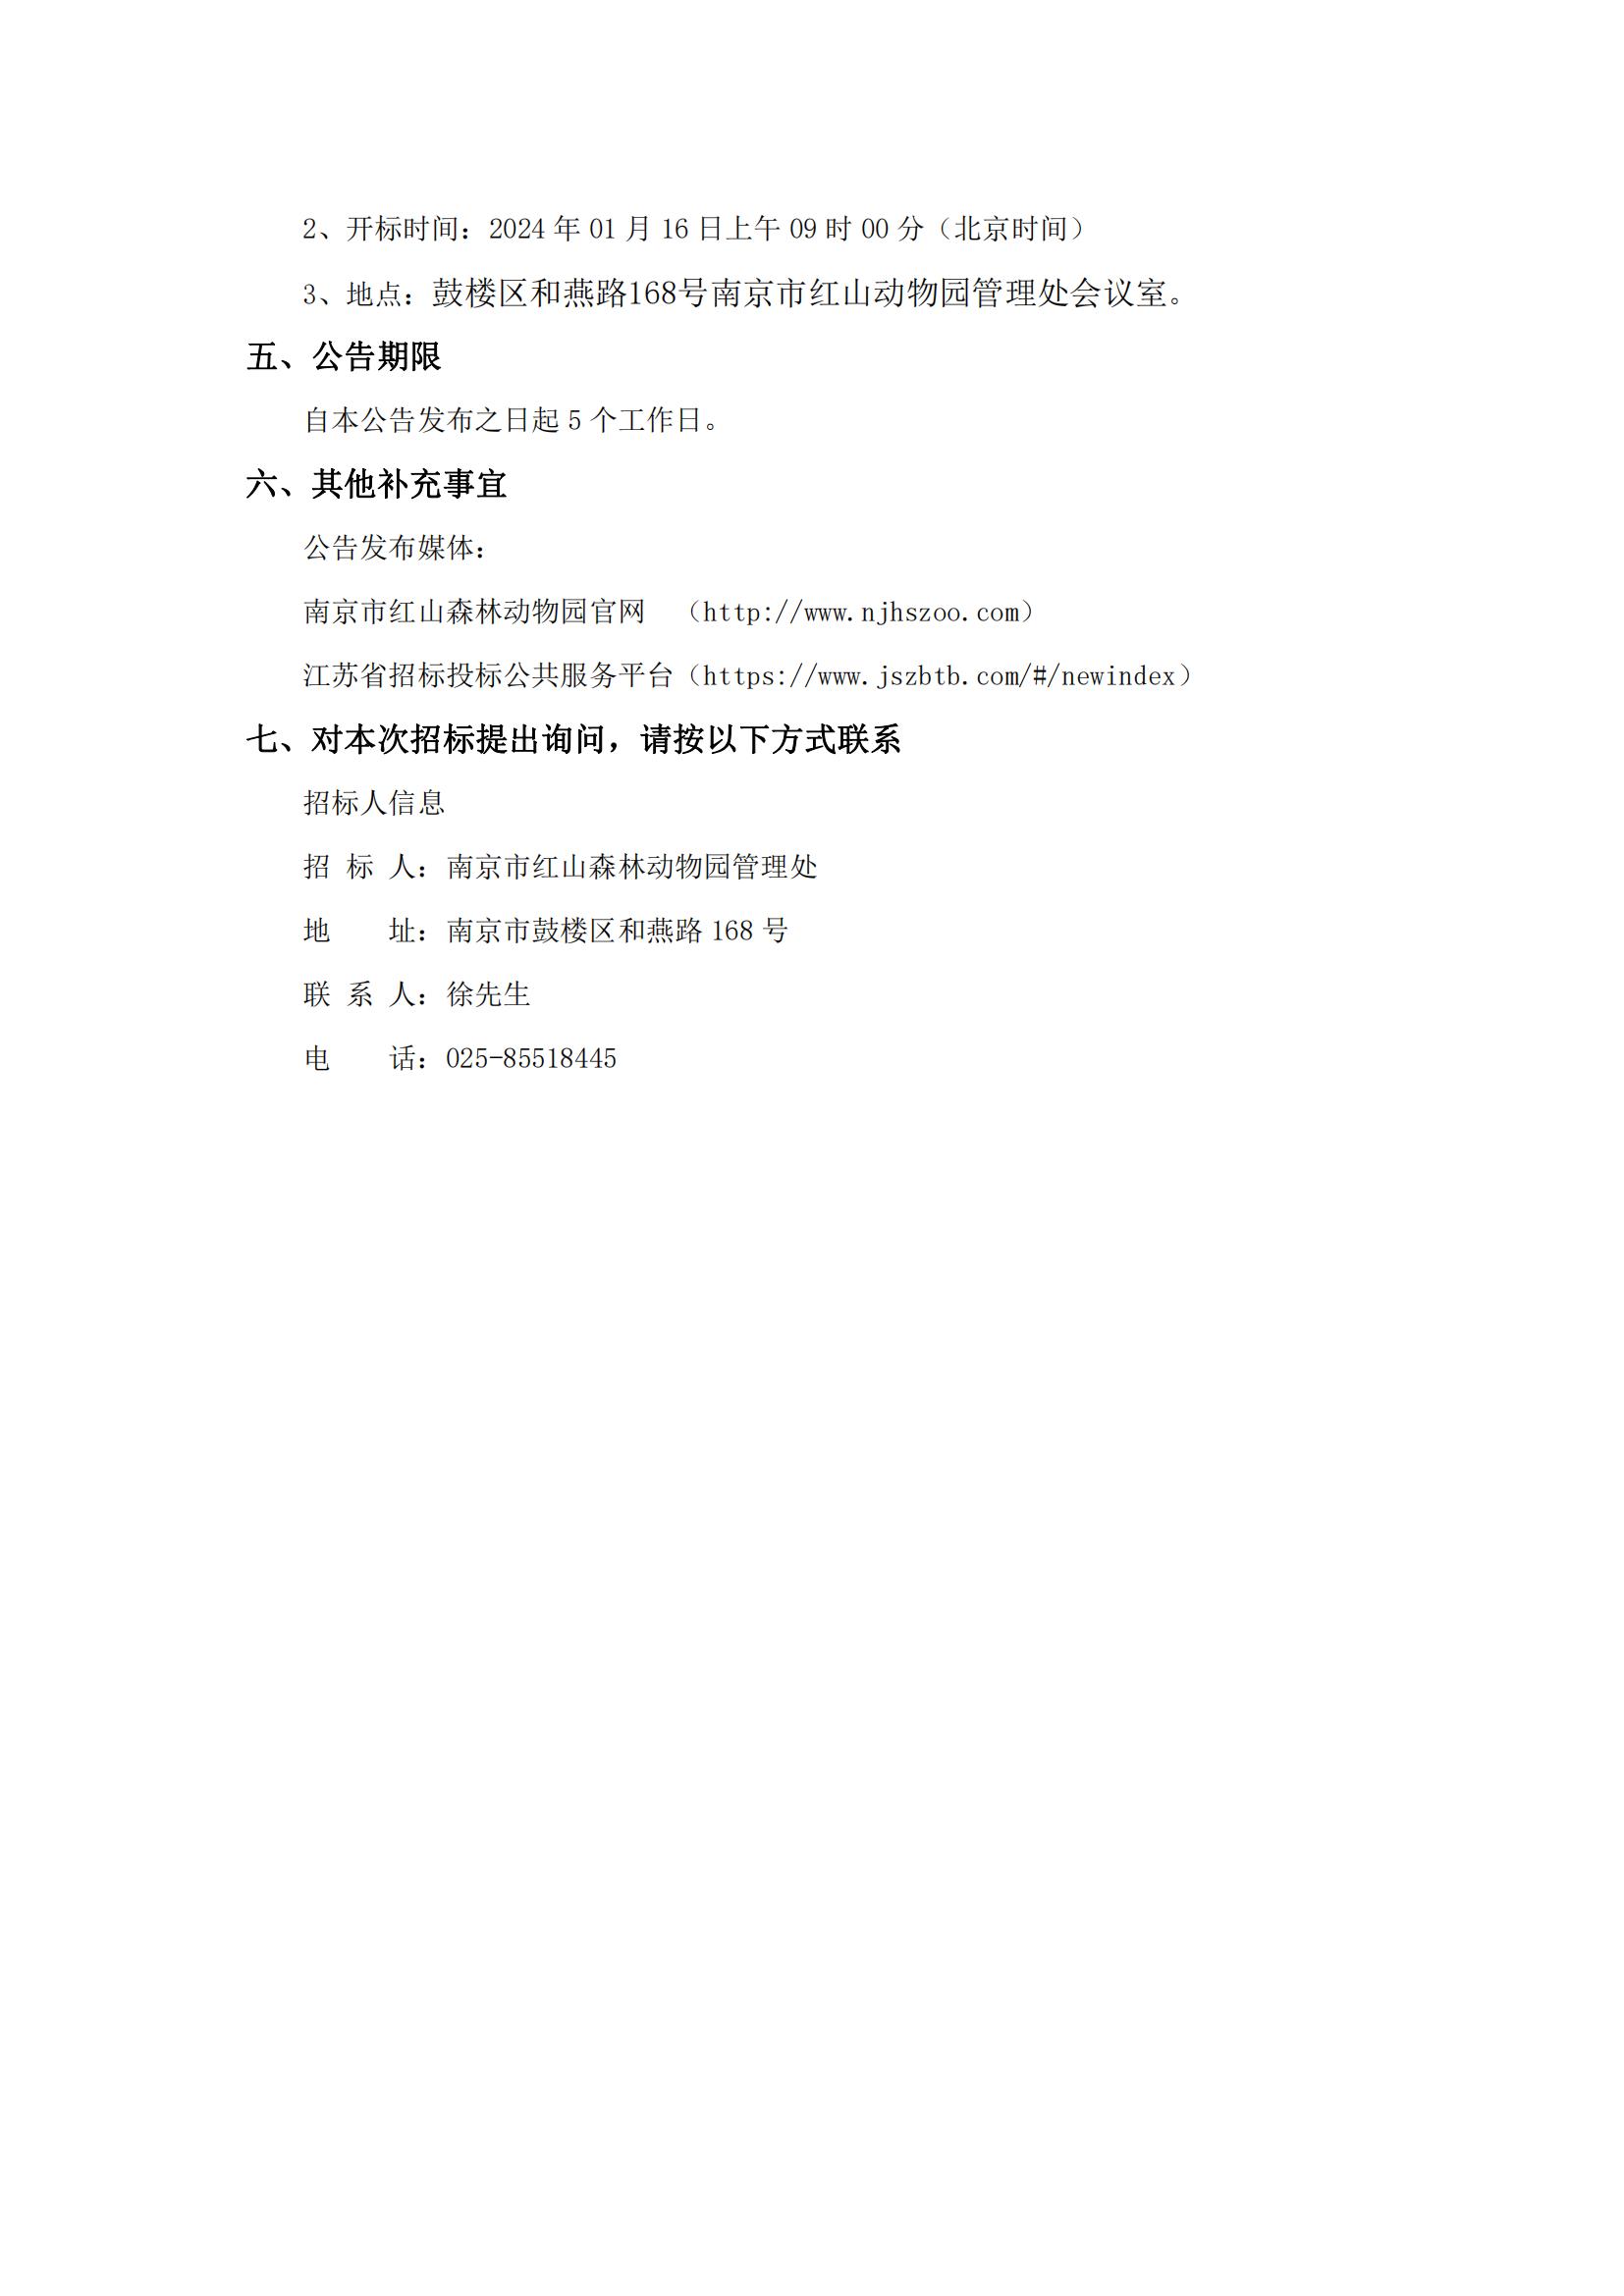 宁动2023-23红山动物园导游图采购项目招标公告_02.jpg